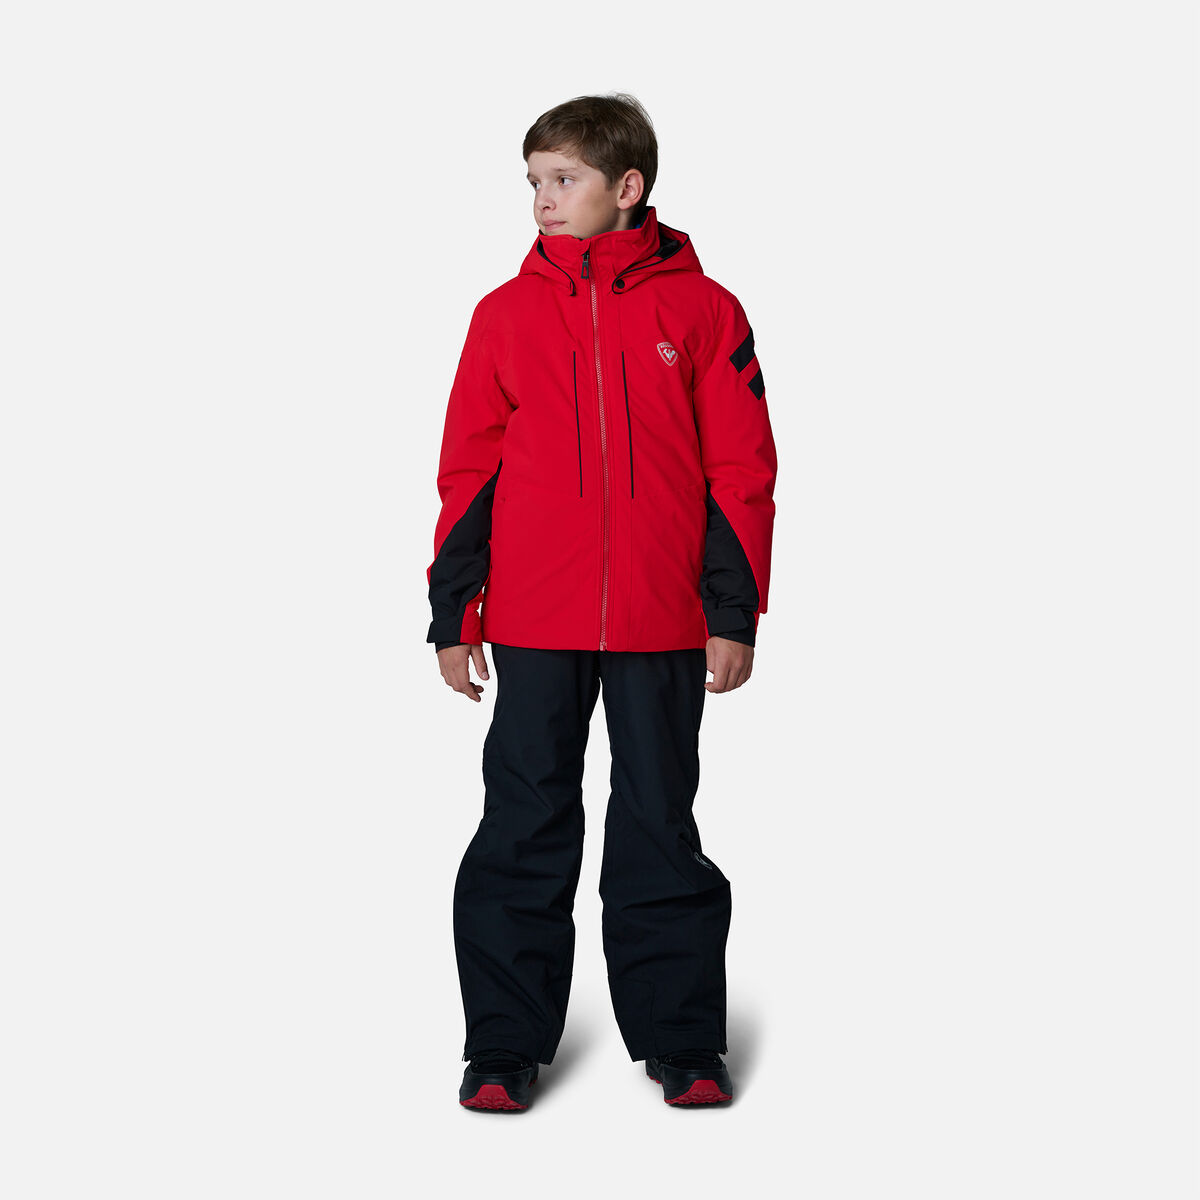 Boys' Ski Jacket